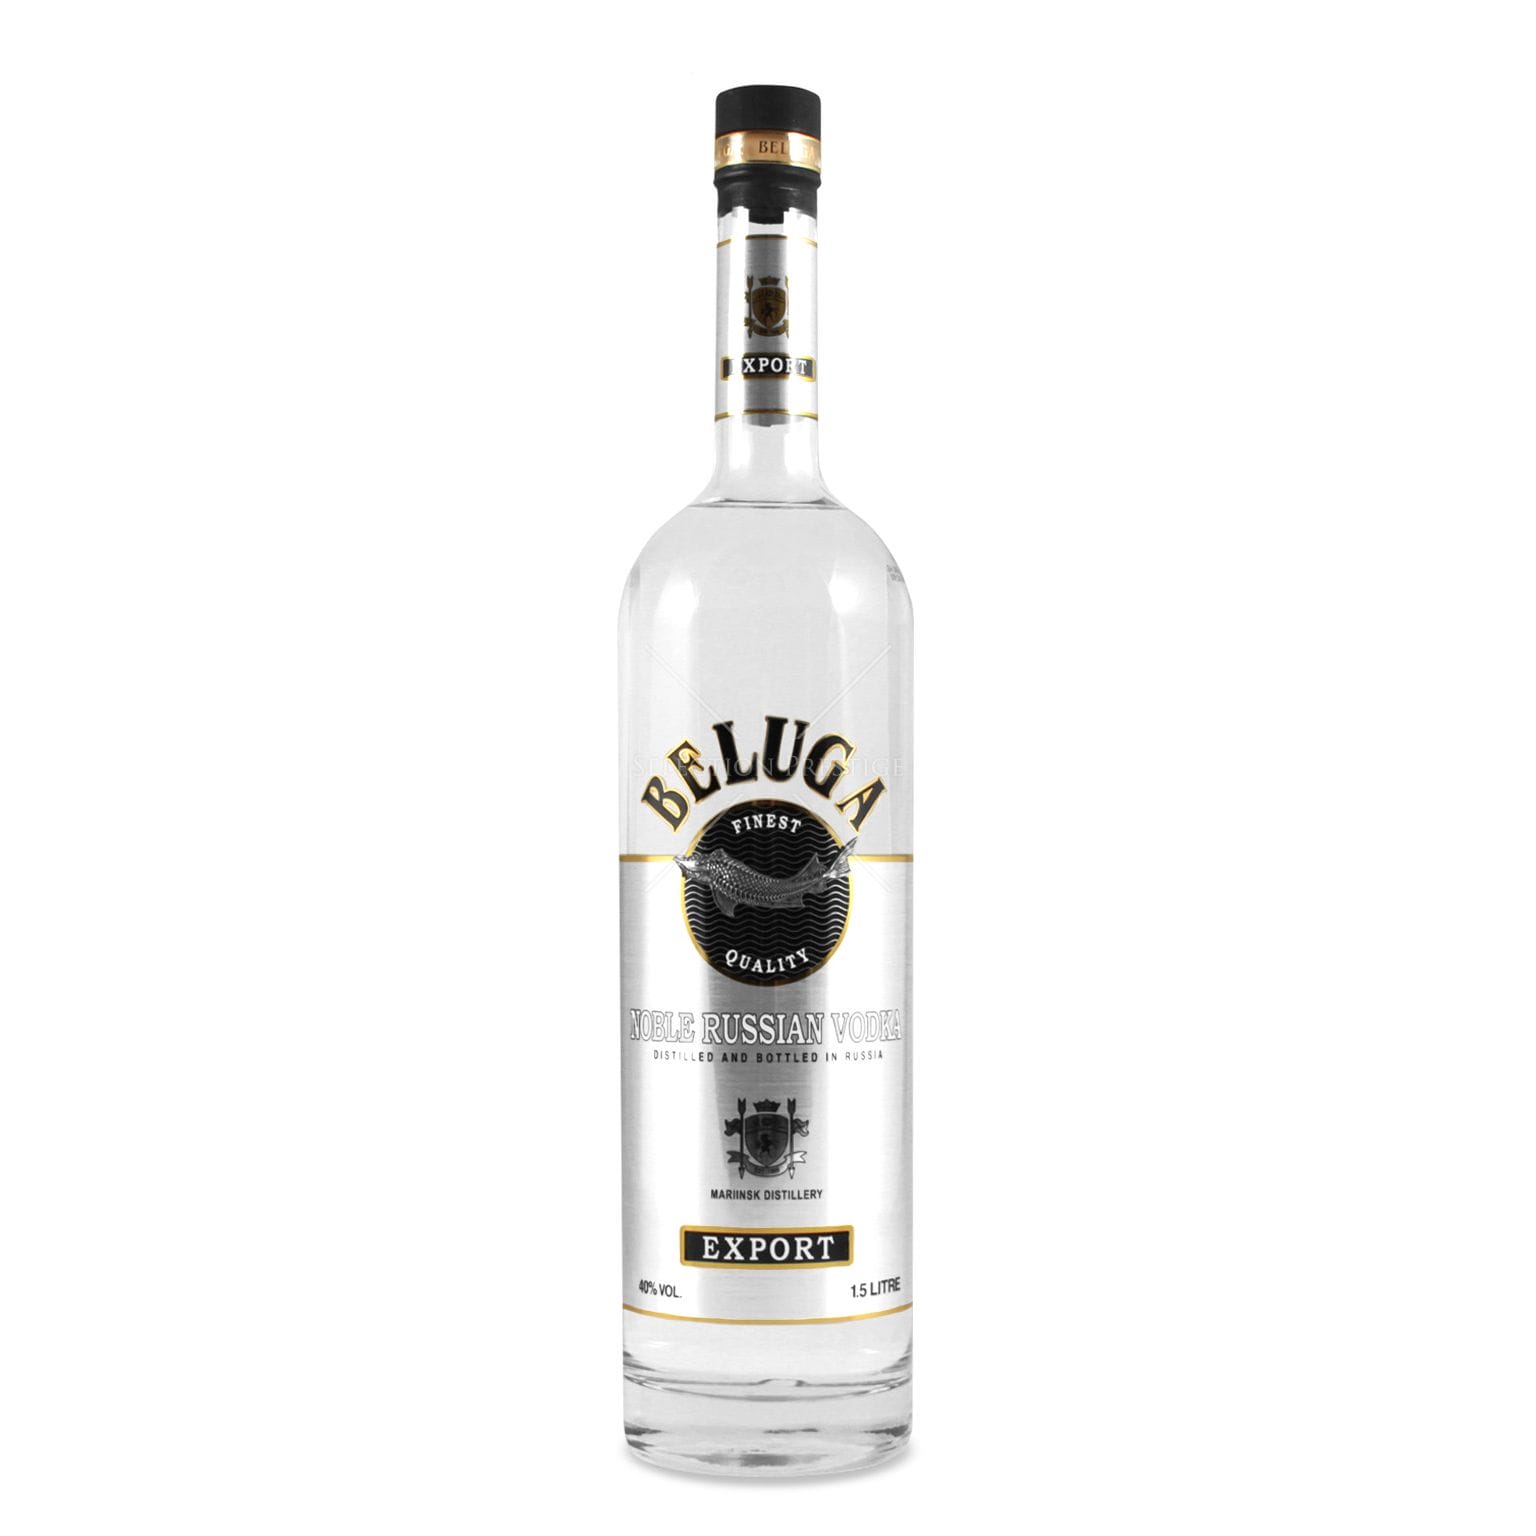 Beluga Noble Vodka 1.5L